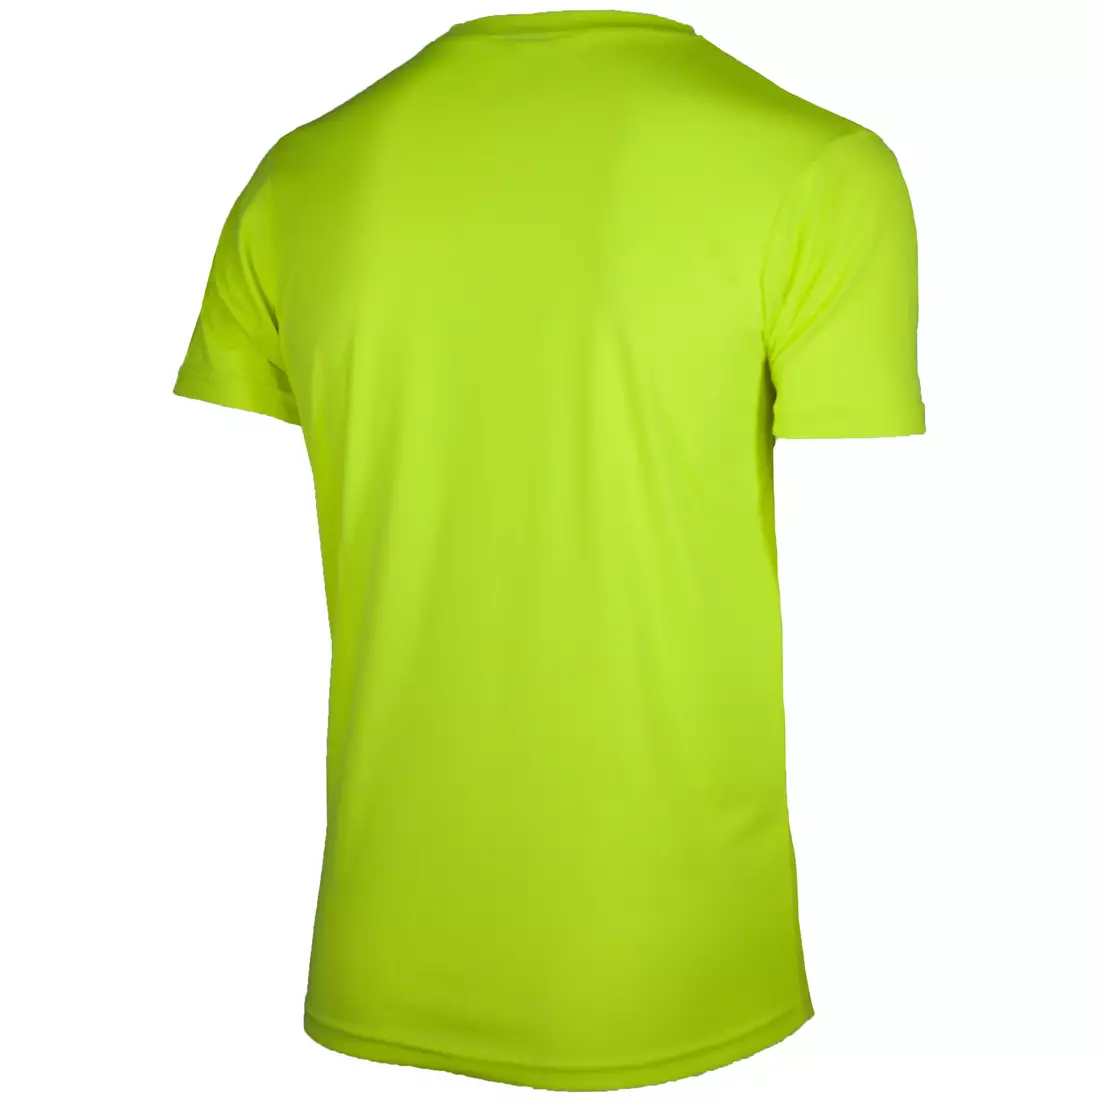 ROGELLI RUN PROMOTION cămașă sport pentru bărbați cu mânecă scurtă, galben fluor